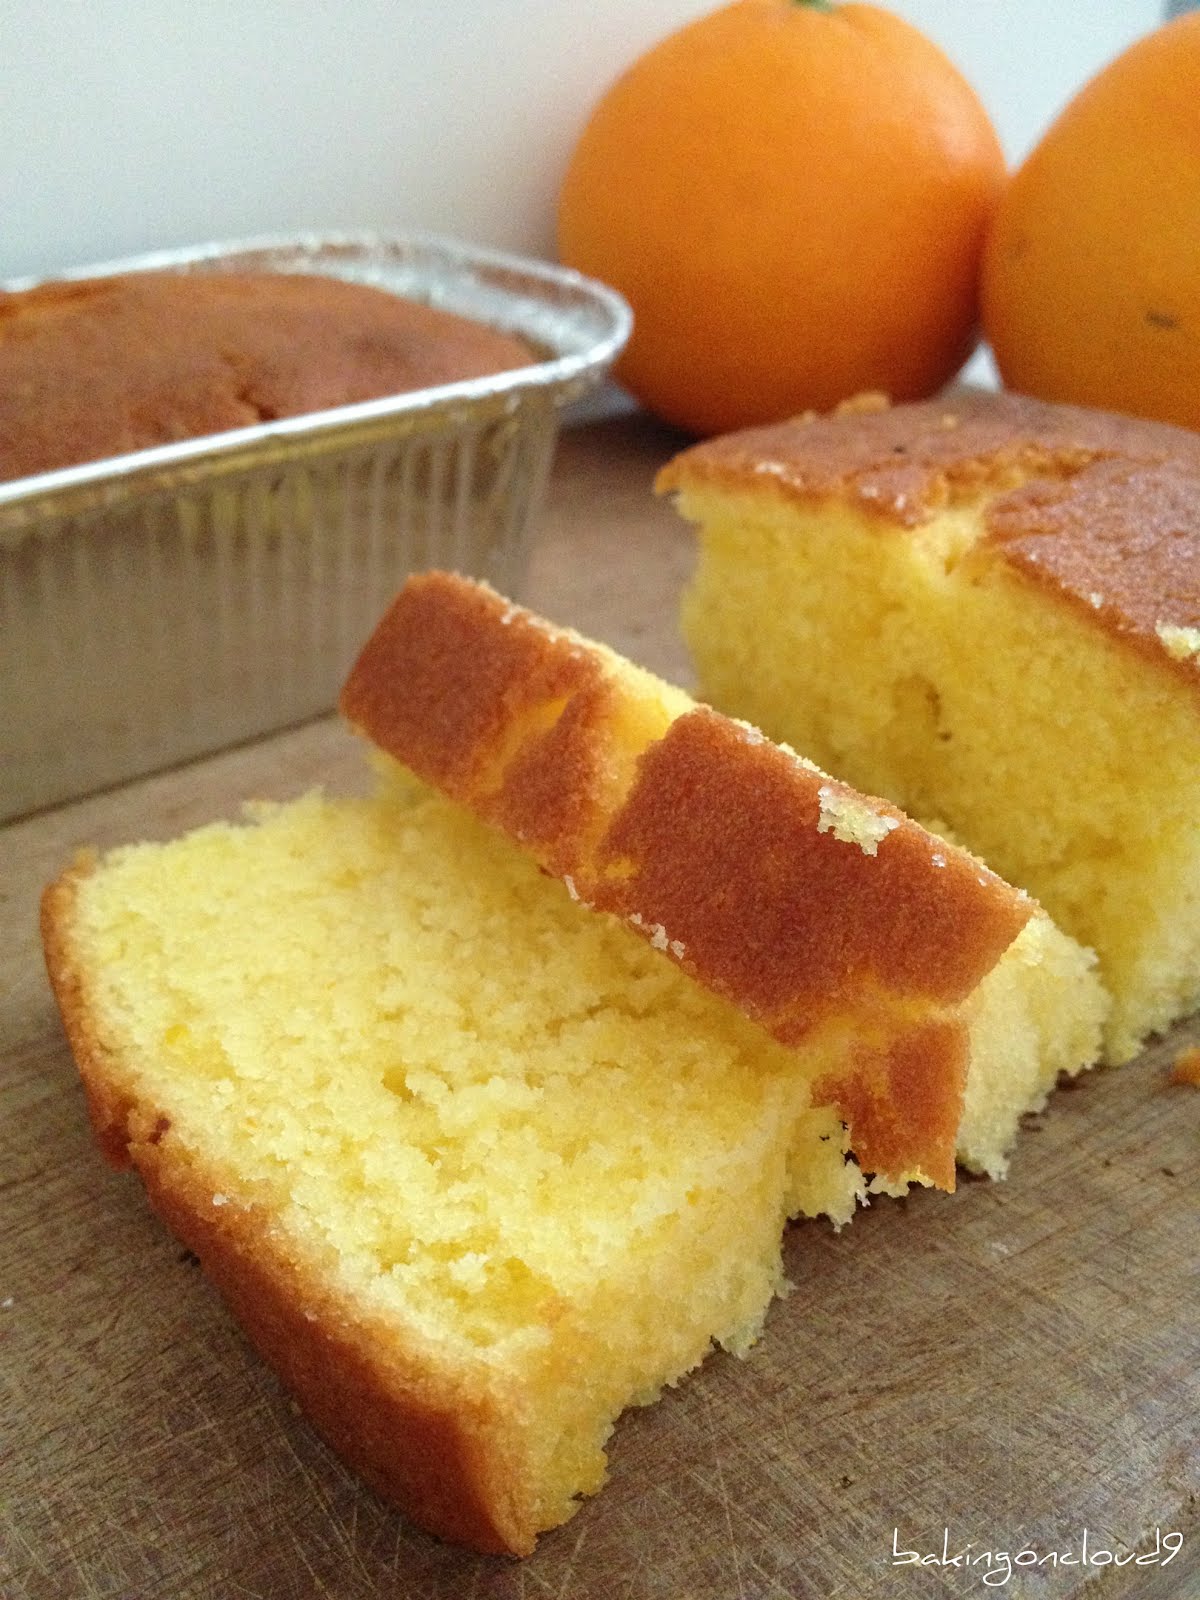 Baking on Cloud 9: Orange butter cake